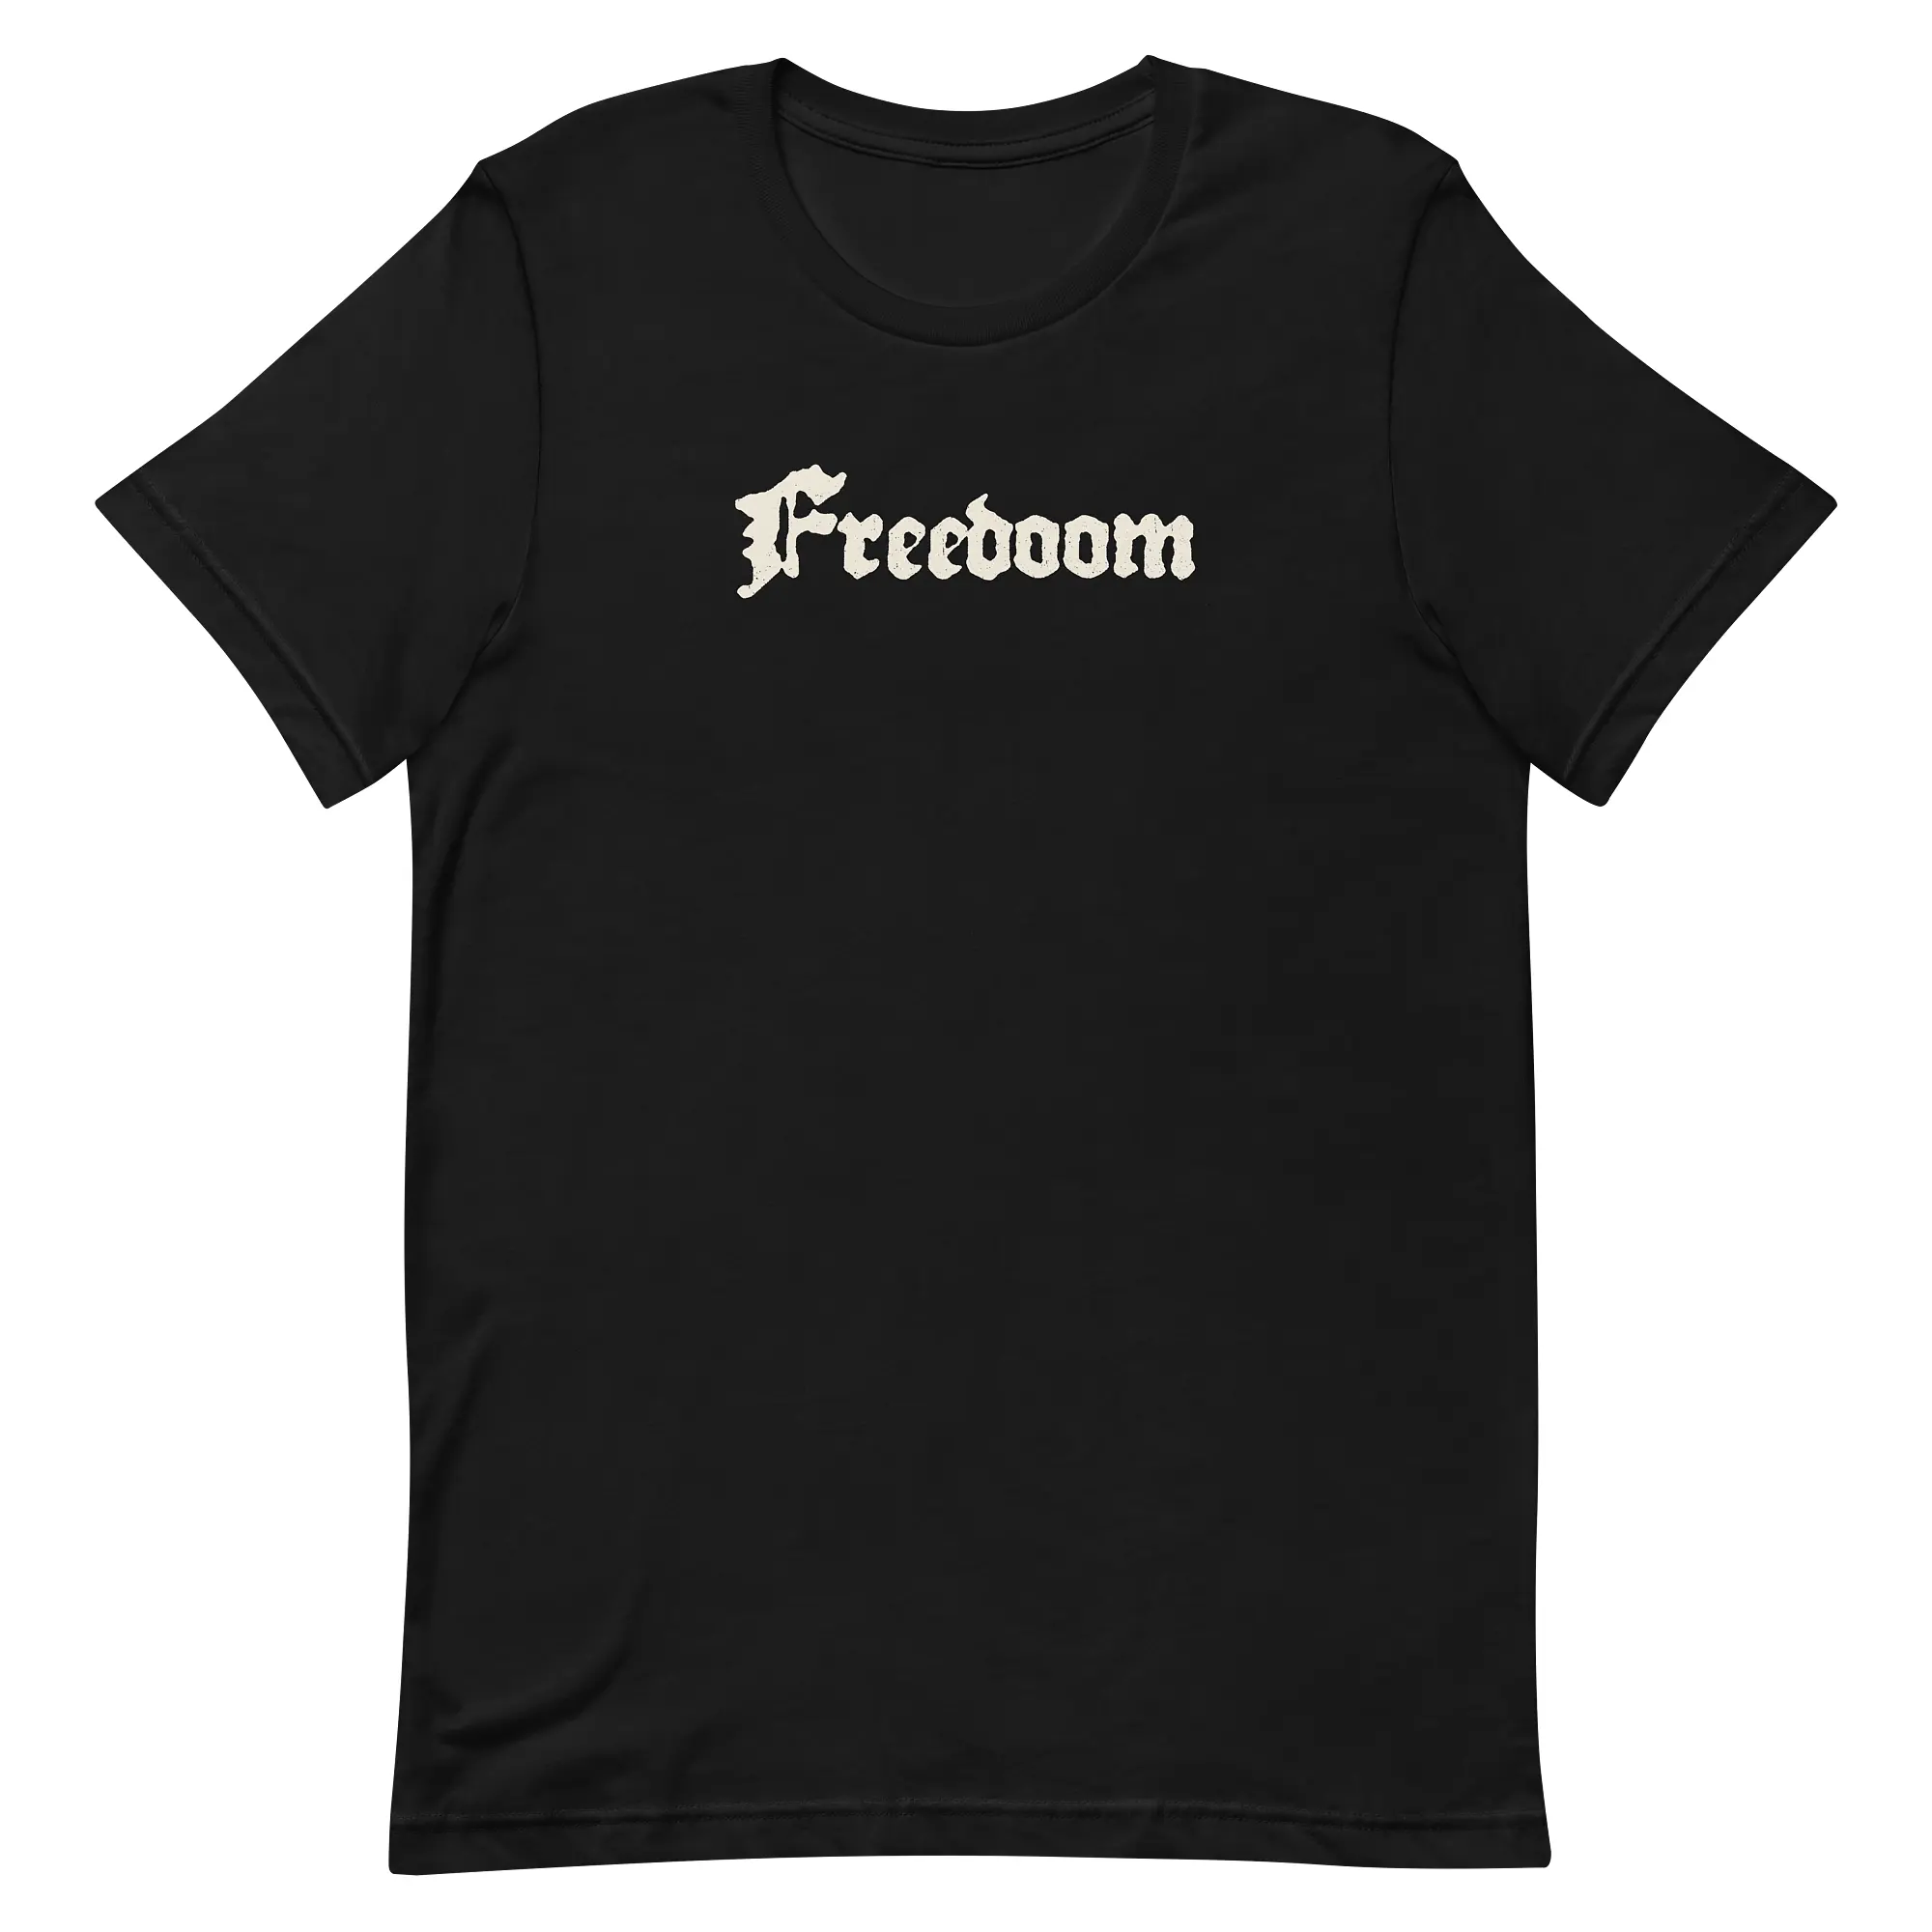 Freedom’s Doom